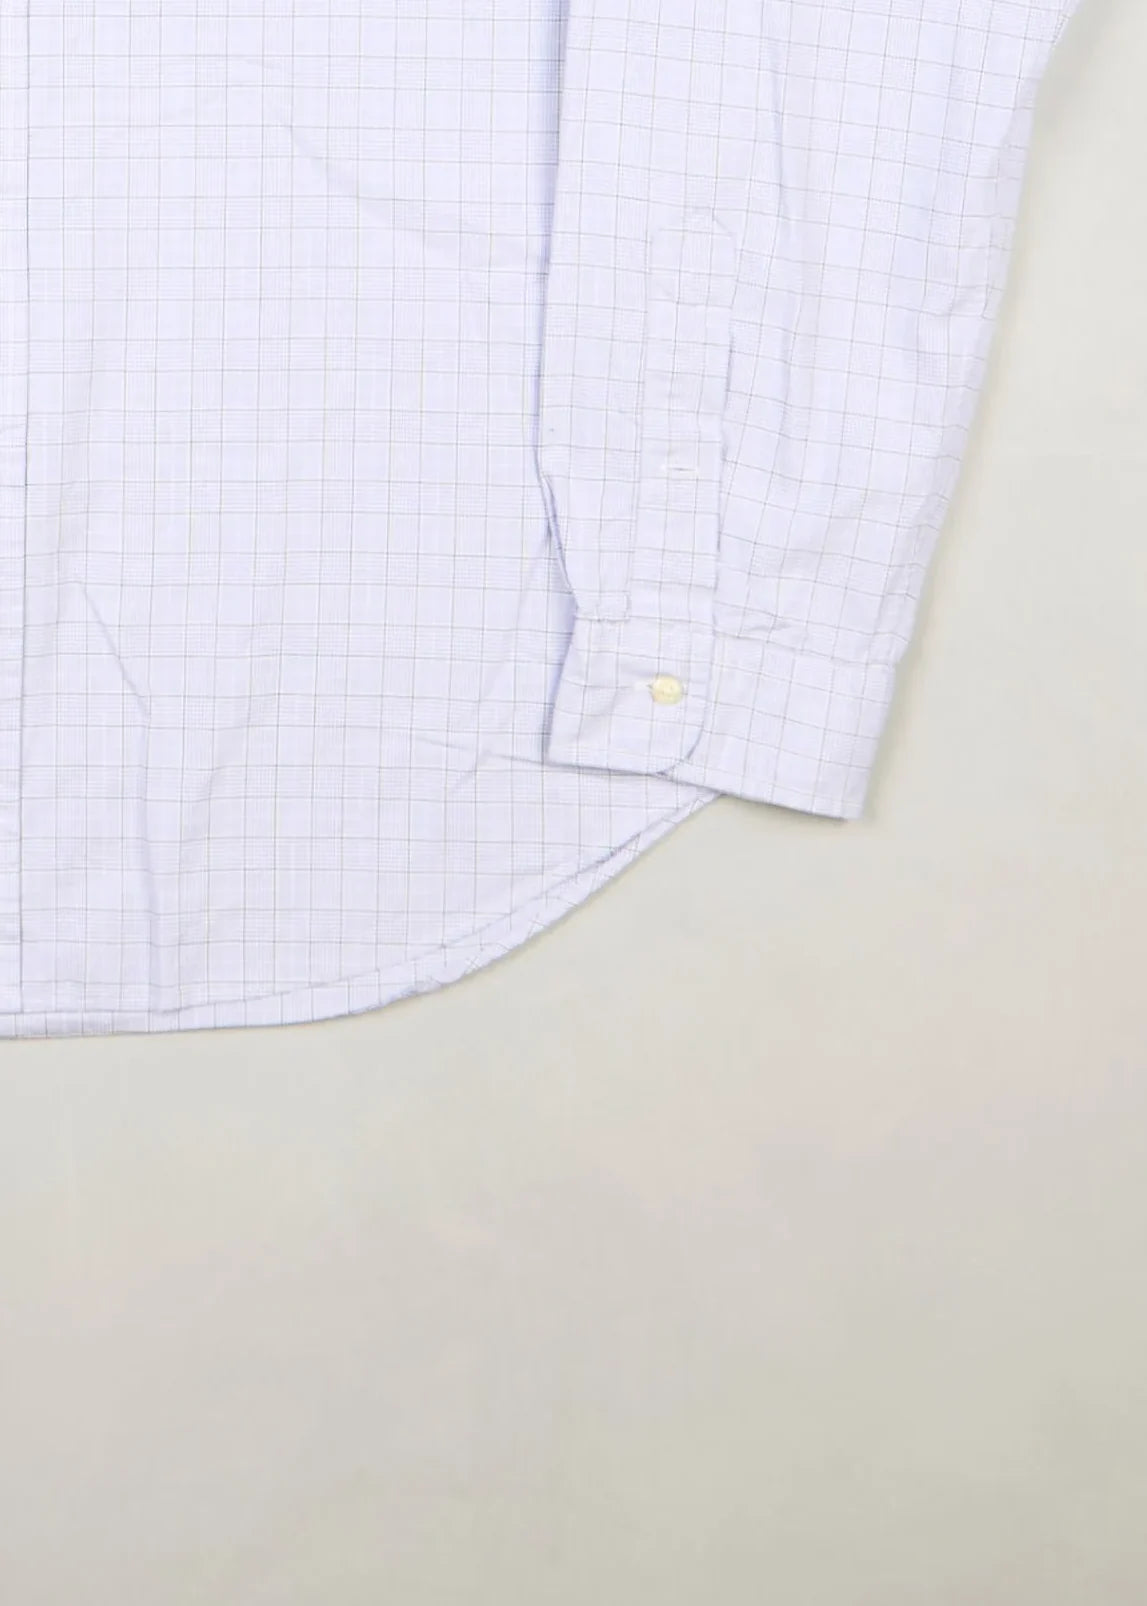 Ralph Lauren - Shirt (XL) Bottom Right